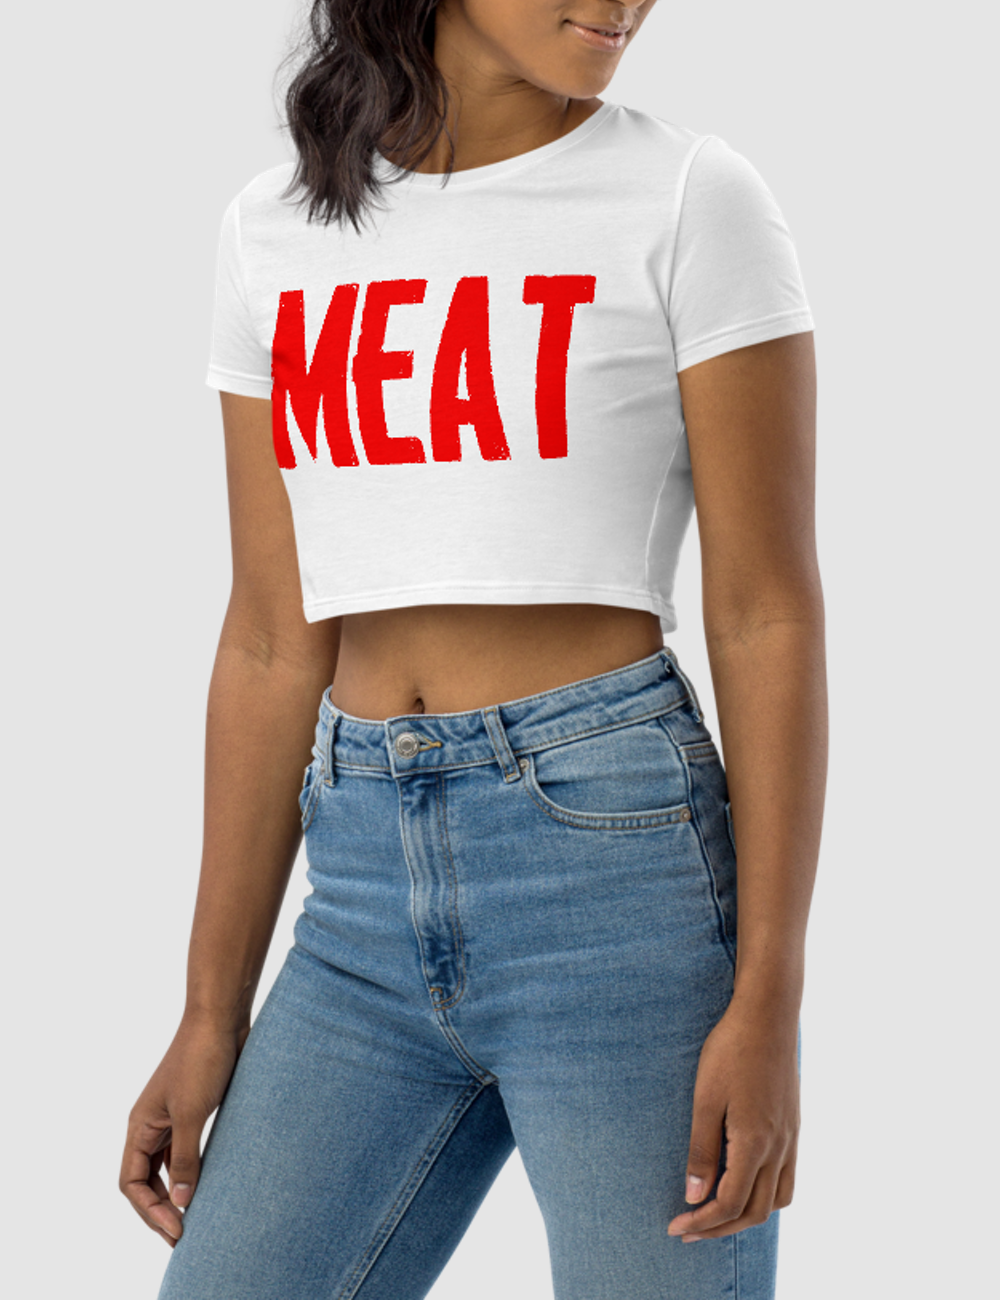 Meat | Women's Crop Top T-Shirt OniTakai